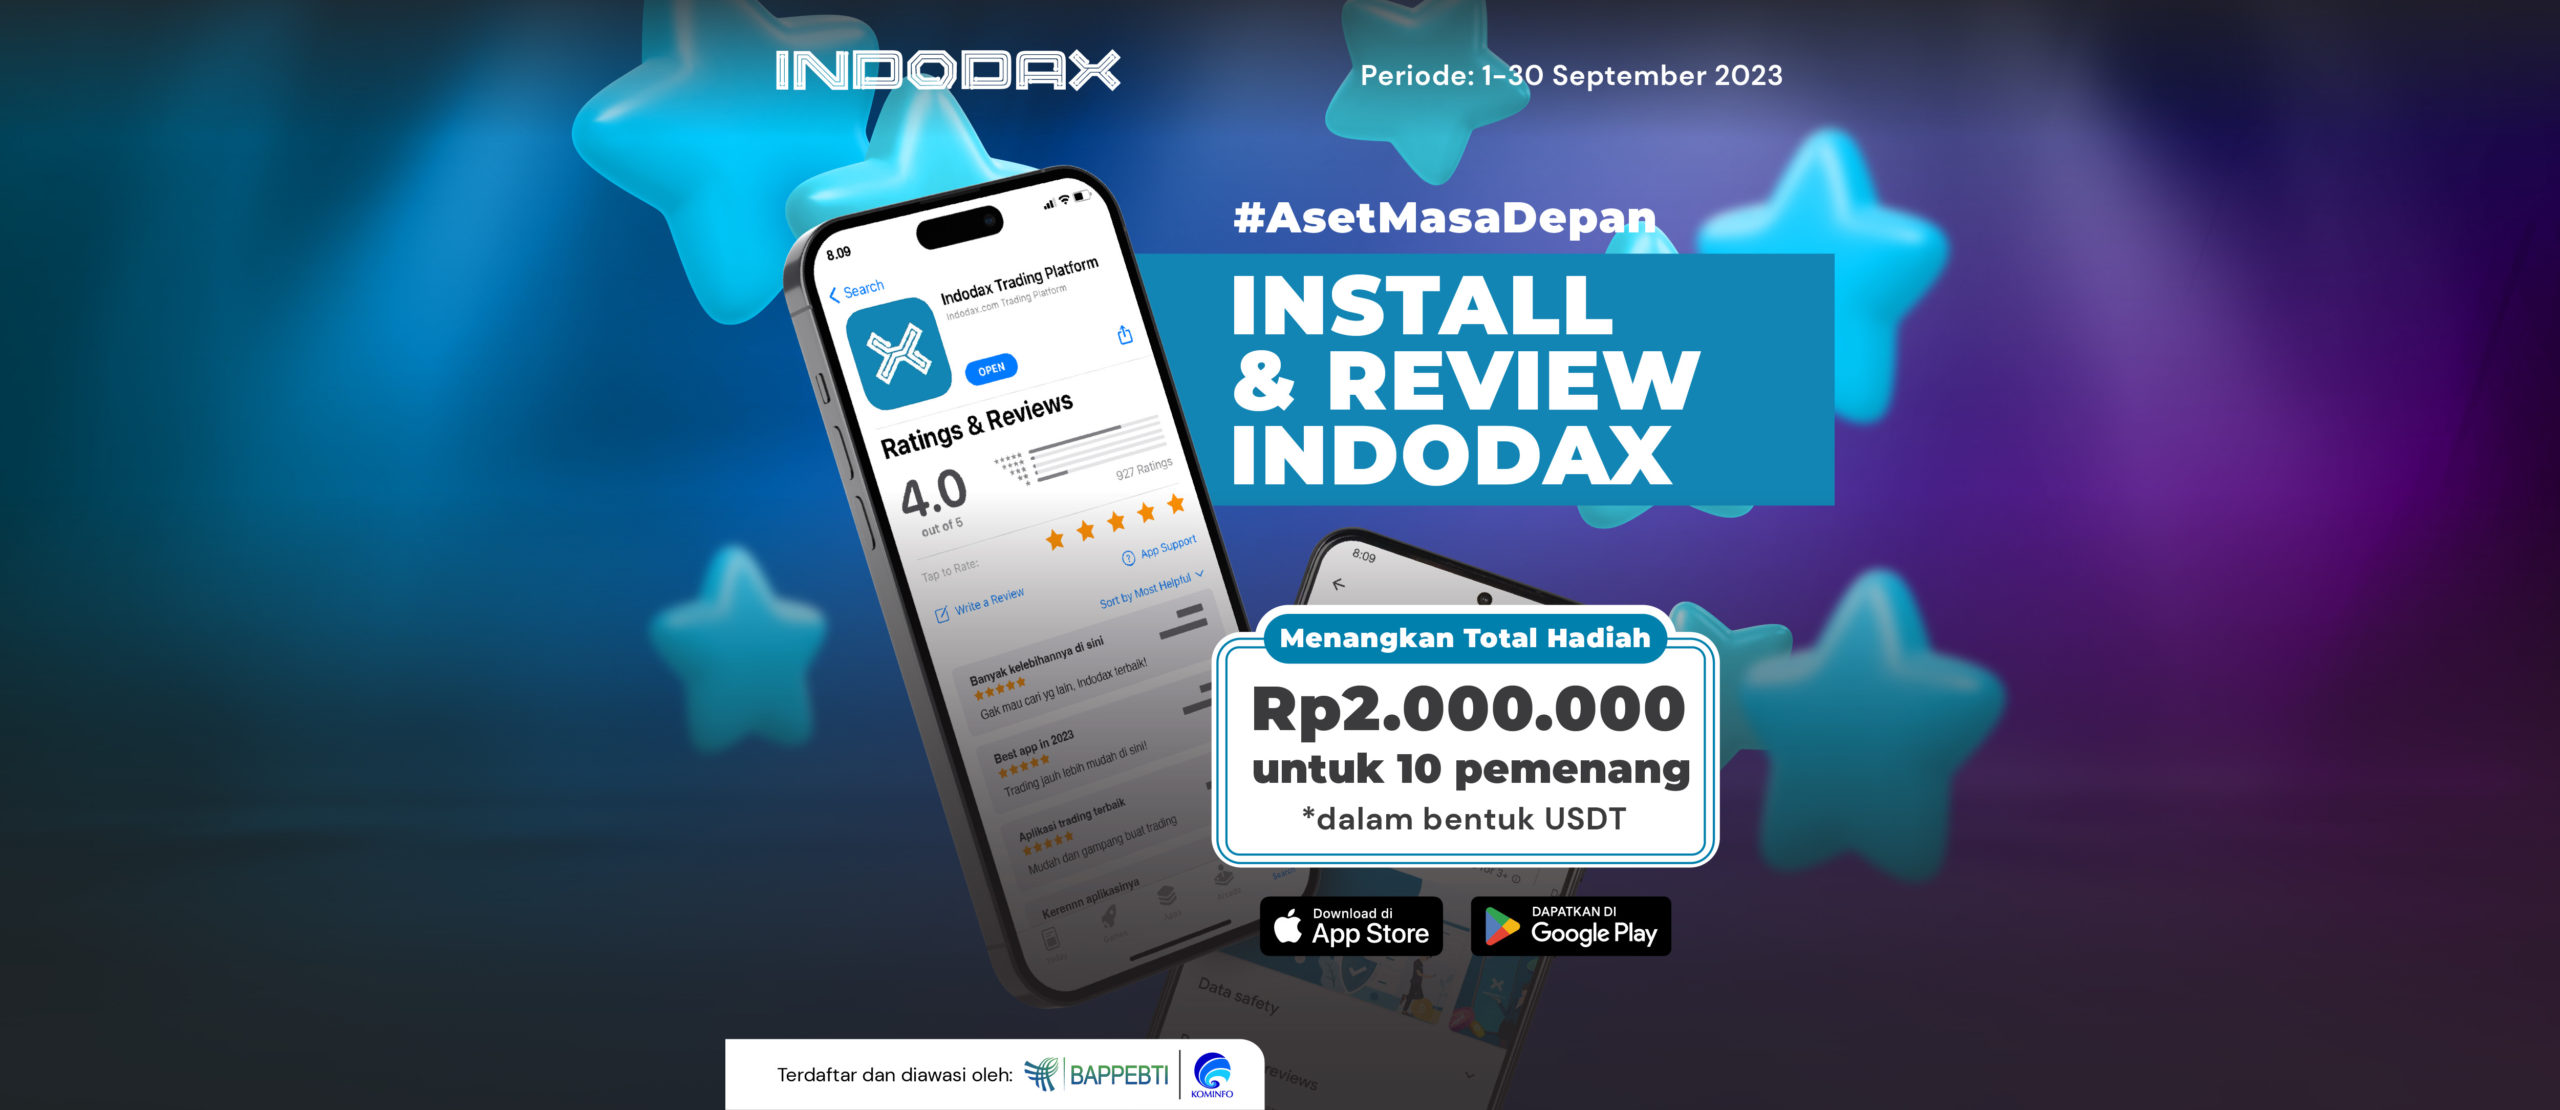 Install & Review INDODAX di App Store atau Play Store balik lagi nih. Ada hadiah Rp2.000.000 dalam bentuk USDT untuk 10 orang pemenang, loh. periodenya 1-30 September 2023 aja